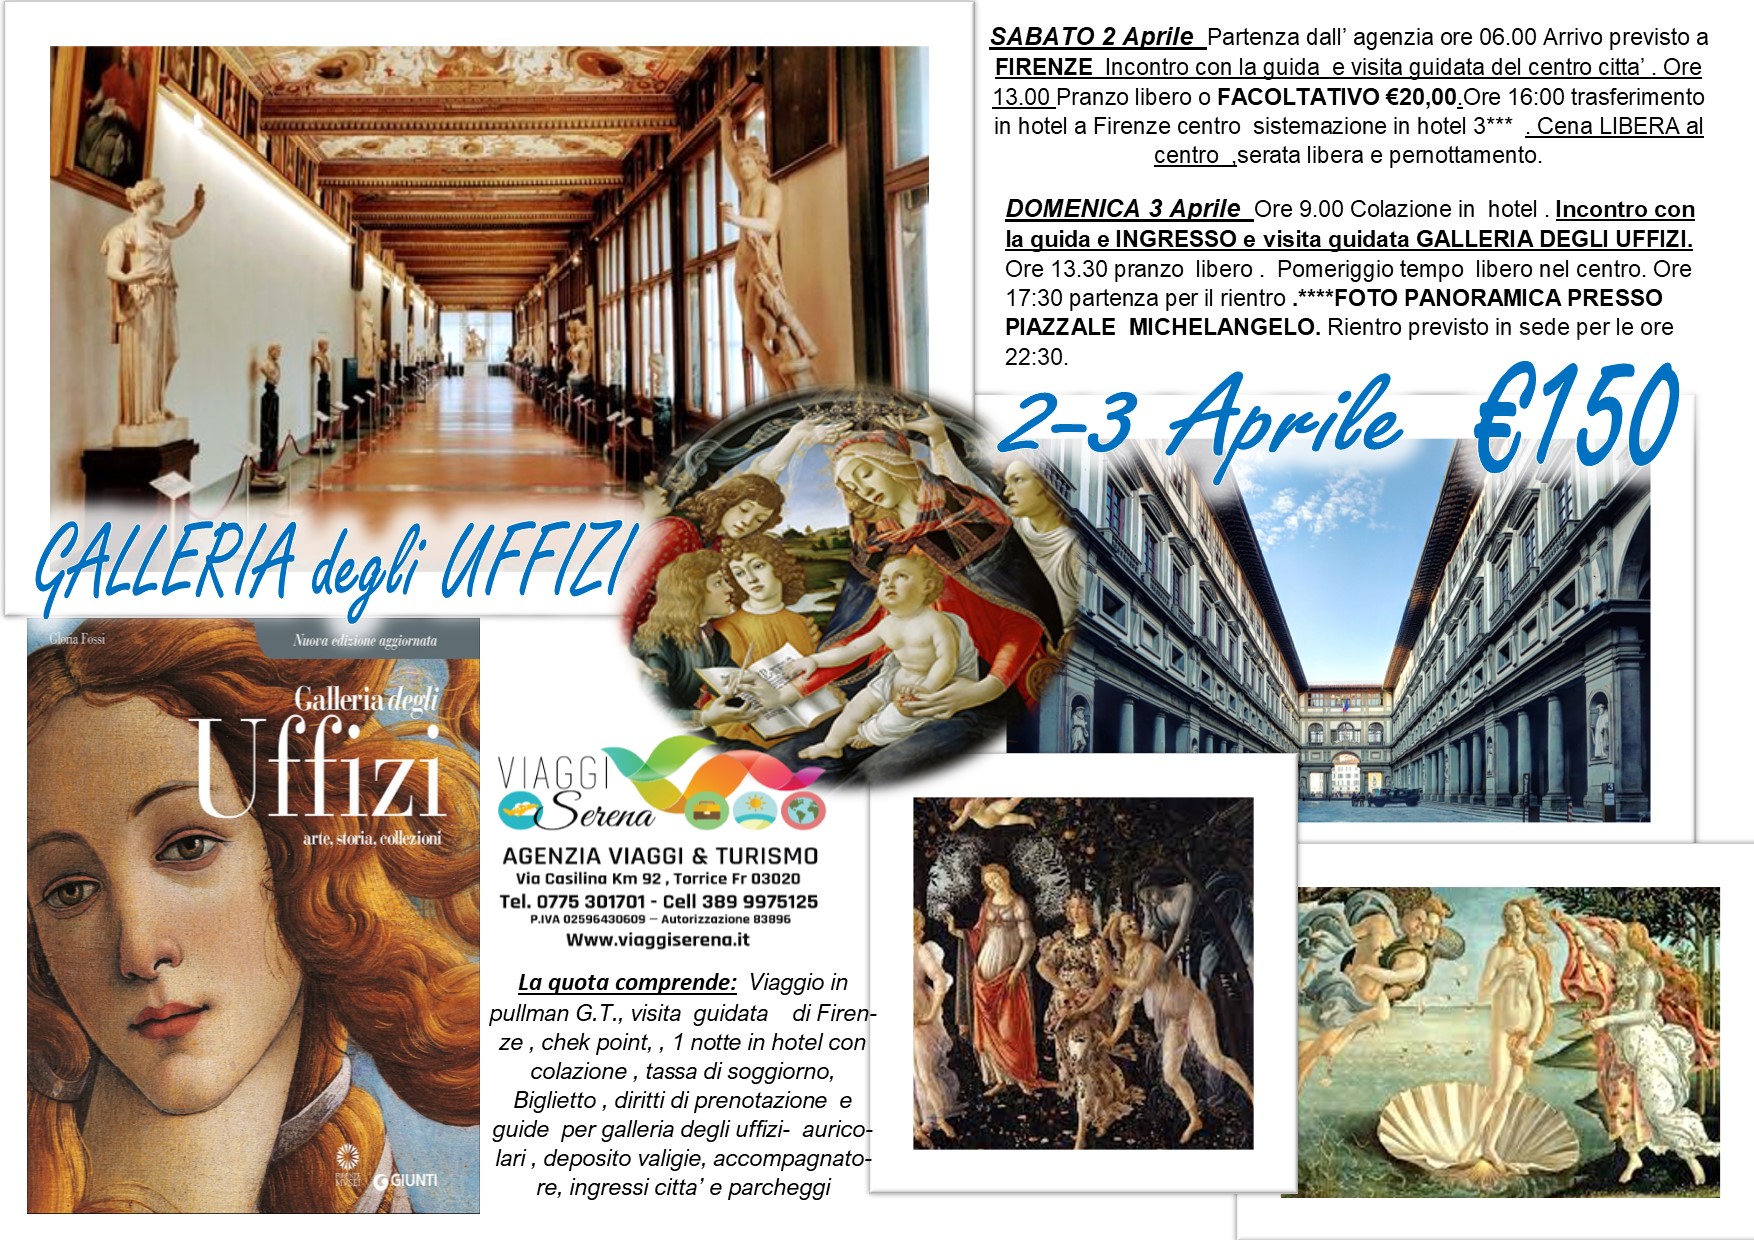 Viaggi di Gruppo: Galleria degli UFFIZI & Firenze 2-3 Aprile € 150,00